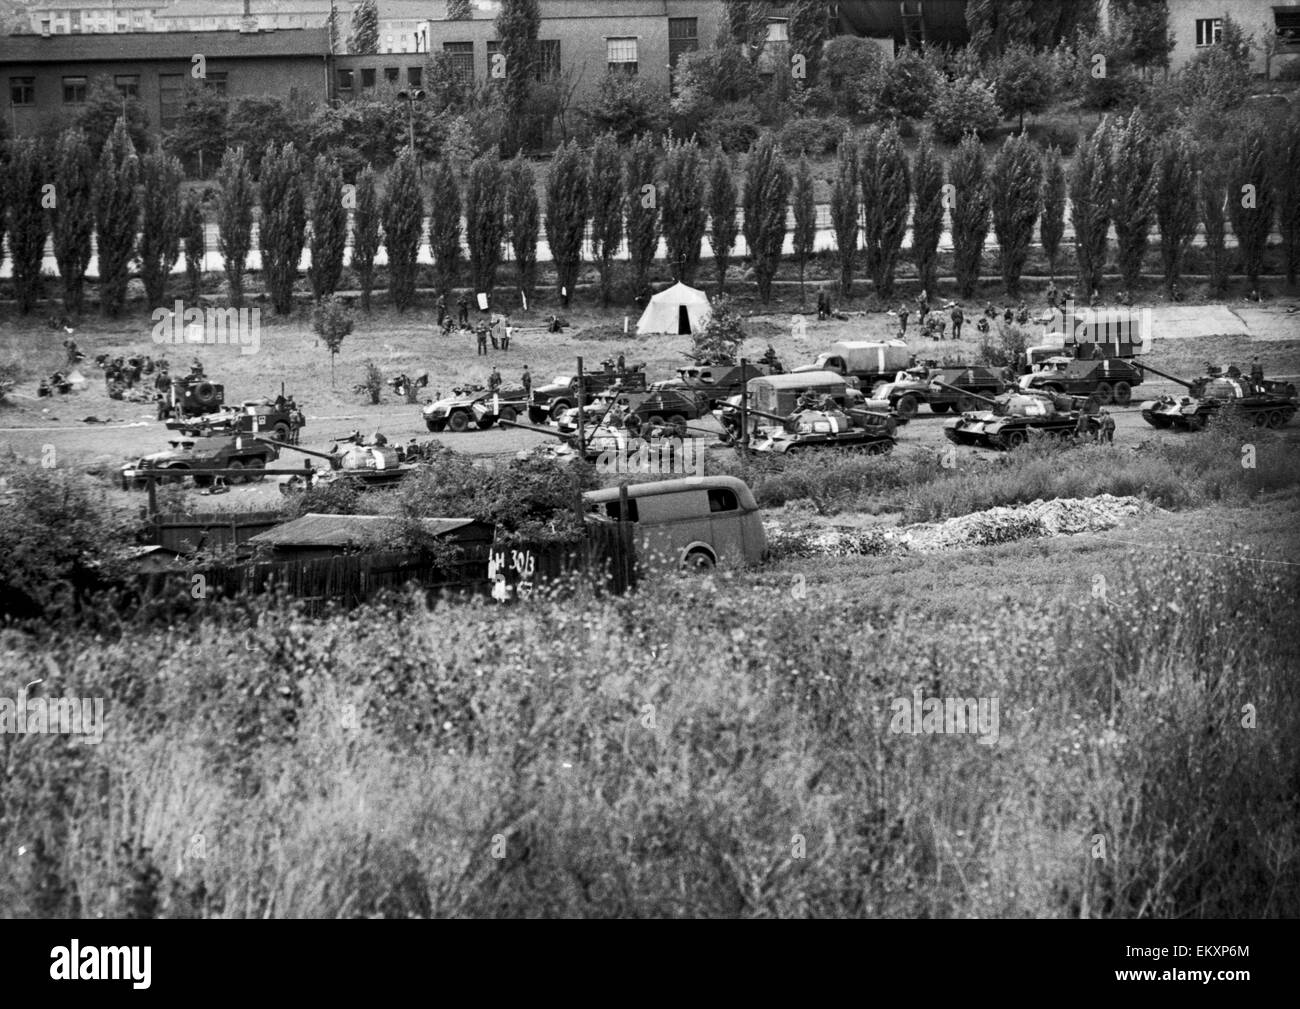 Russische Panzer und verschiedene Militärfahrzeuge gesehen hier in einem Park am Rande von Prag nach Warschau Pakte Invasion der Tschechoslowakei nach der Sowjetunion Alexander Dubček Reformen für ein weniger zentralisierten Regime abgelehnt. 4. September 1968 Stockfoto